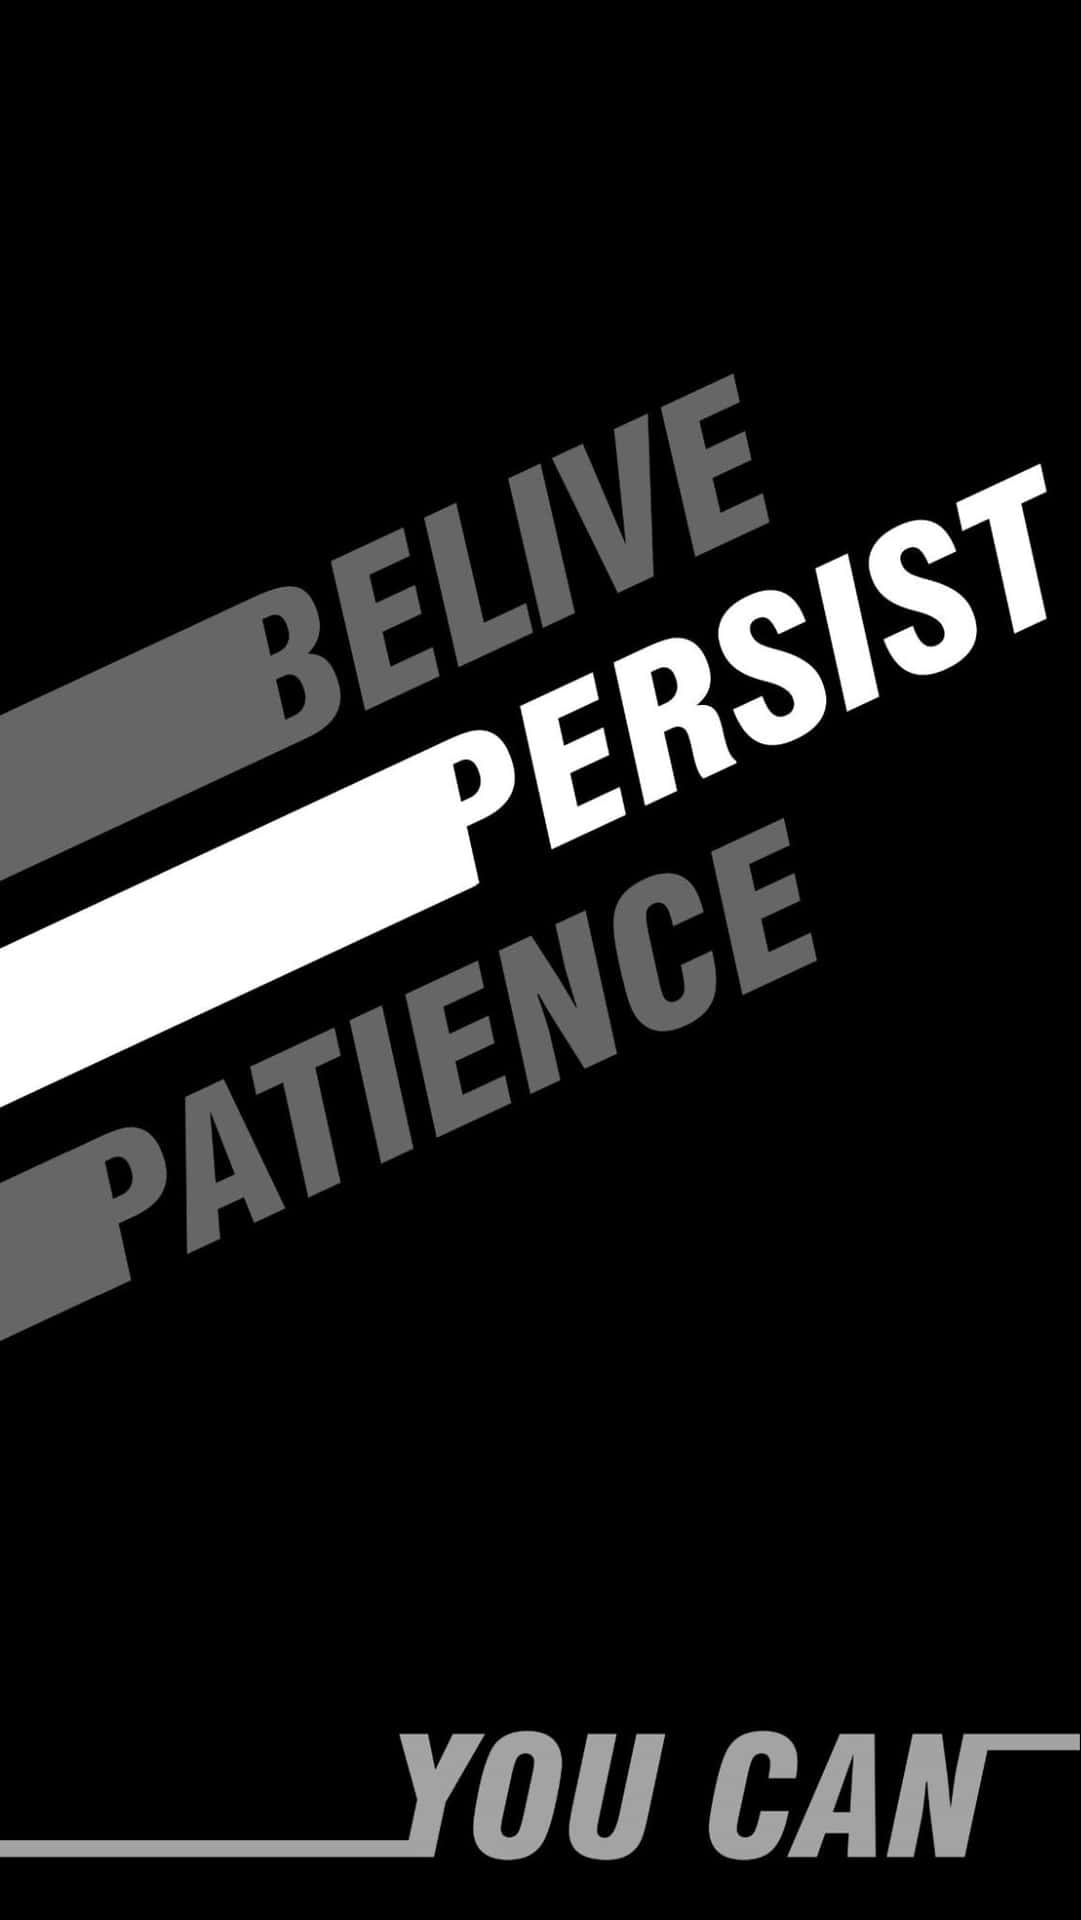 Believe, Persistent, Patience Wallpaper